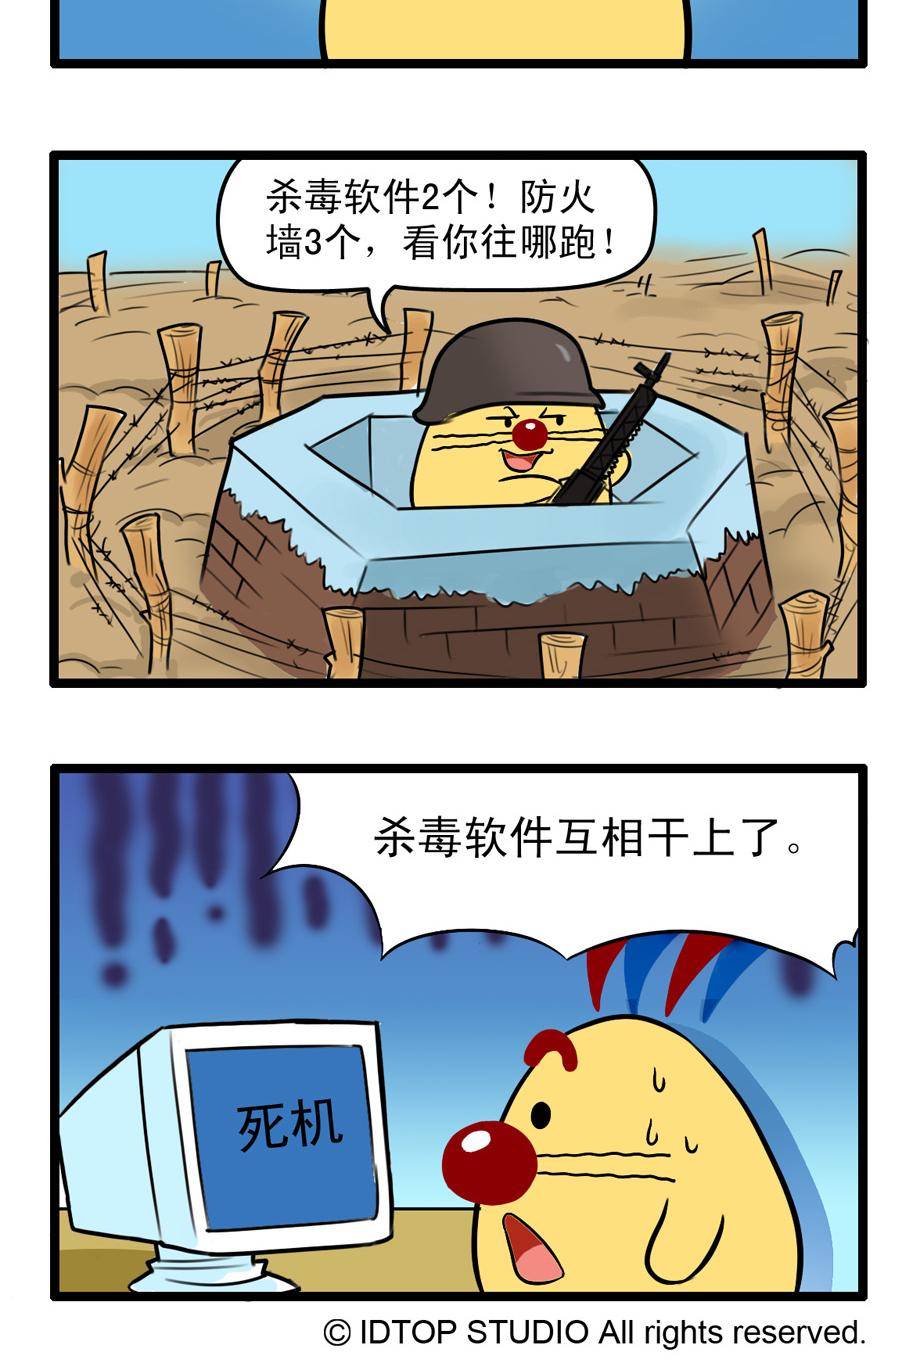 辛巴狗四格漫画 - 四格53 - 2